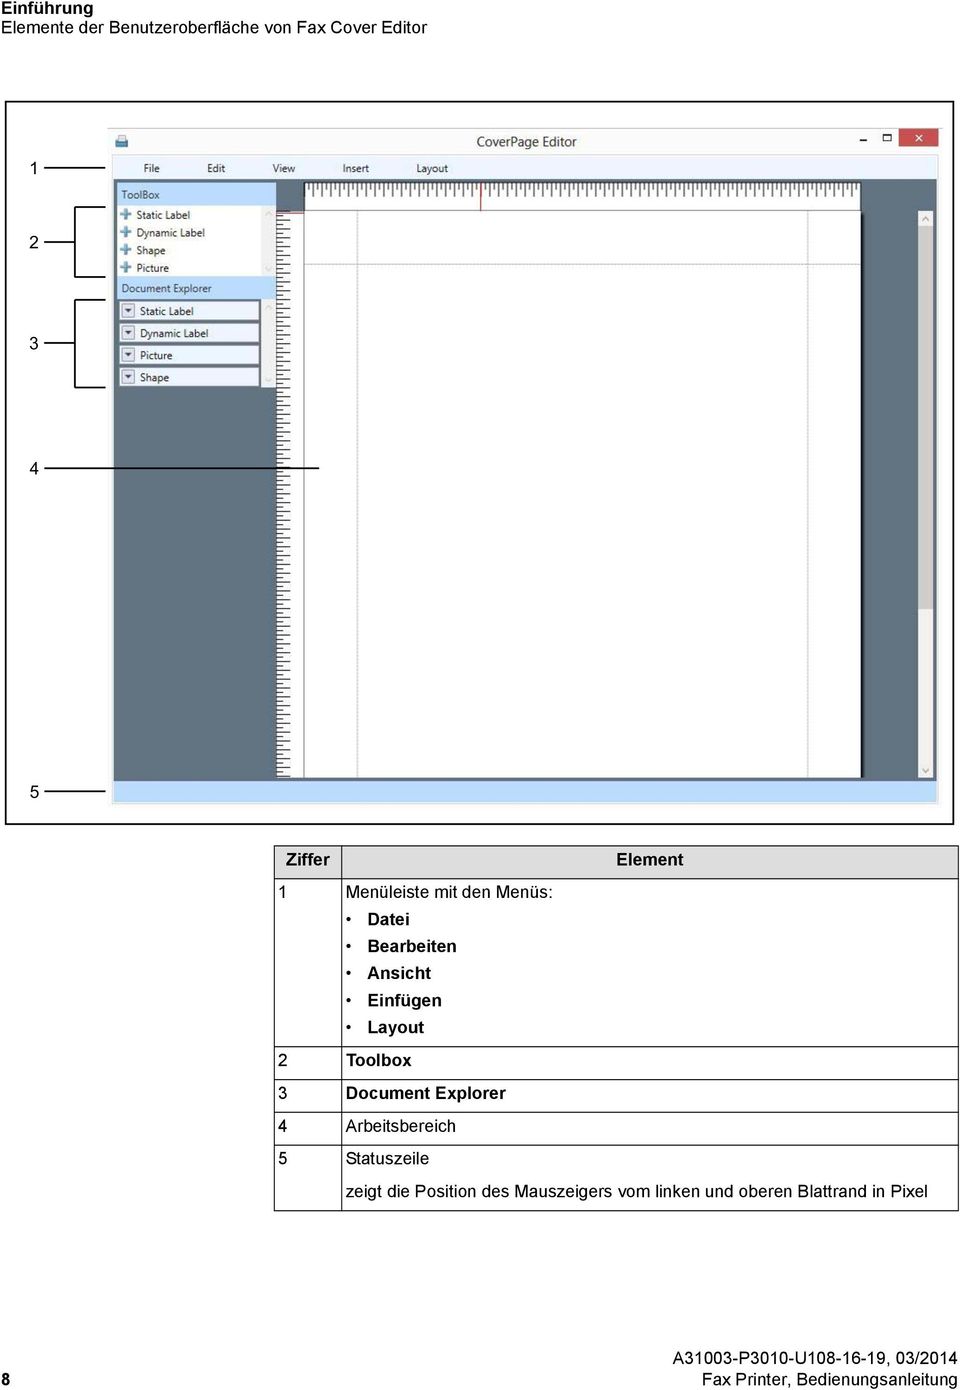 Toolbox 3 Document Explorer 4 Arbeitsbereich 5 Statuszeile zeigt die Position des